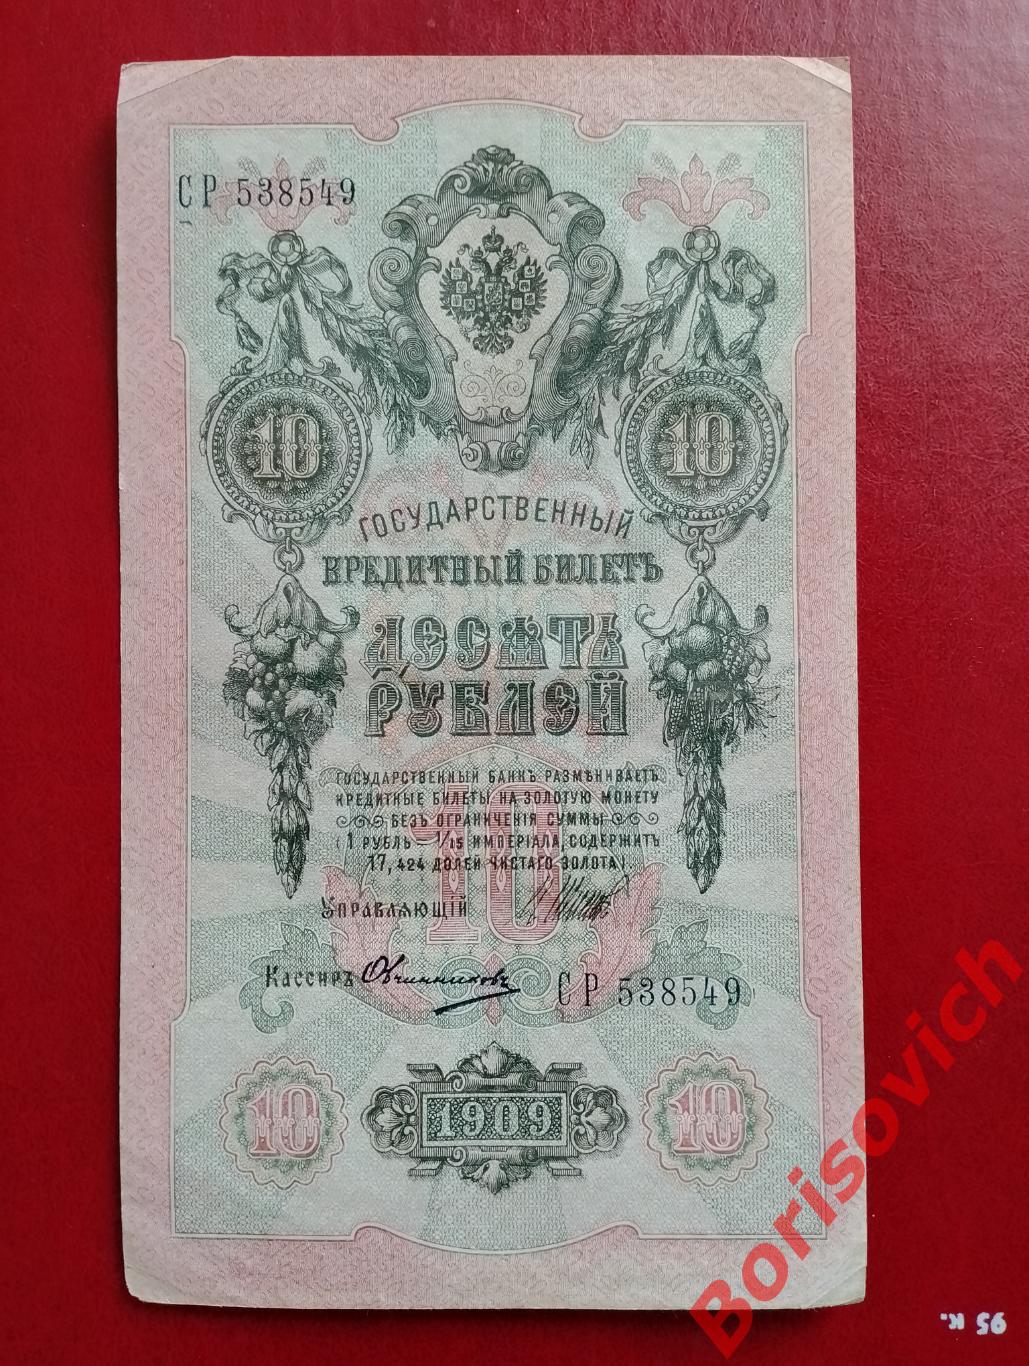 10 рублей 1909 г Управляющий ШИПОВ Кассир ОВЧИННИКОВ. СР 538549